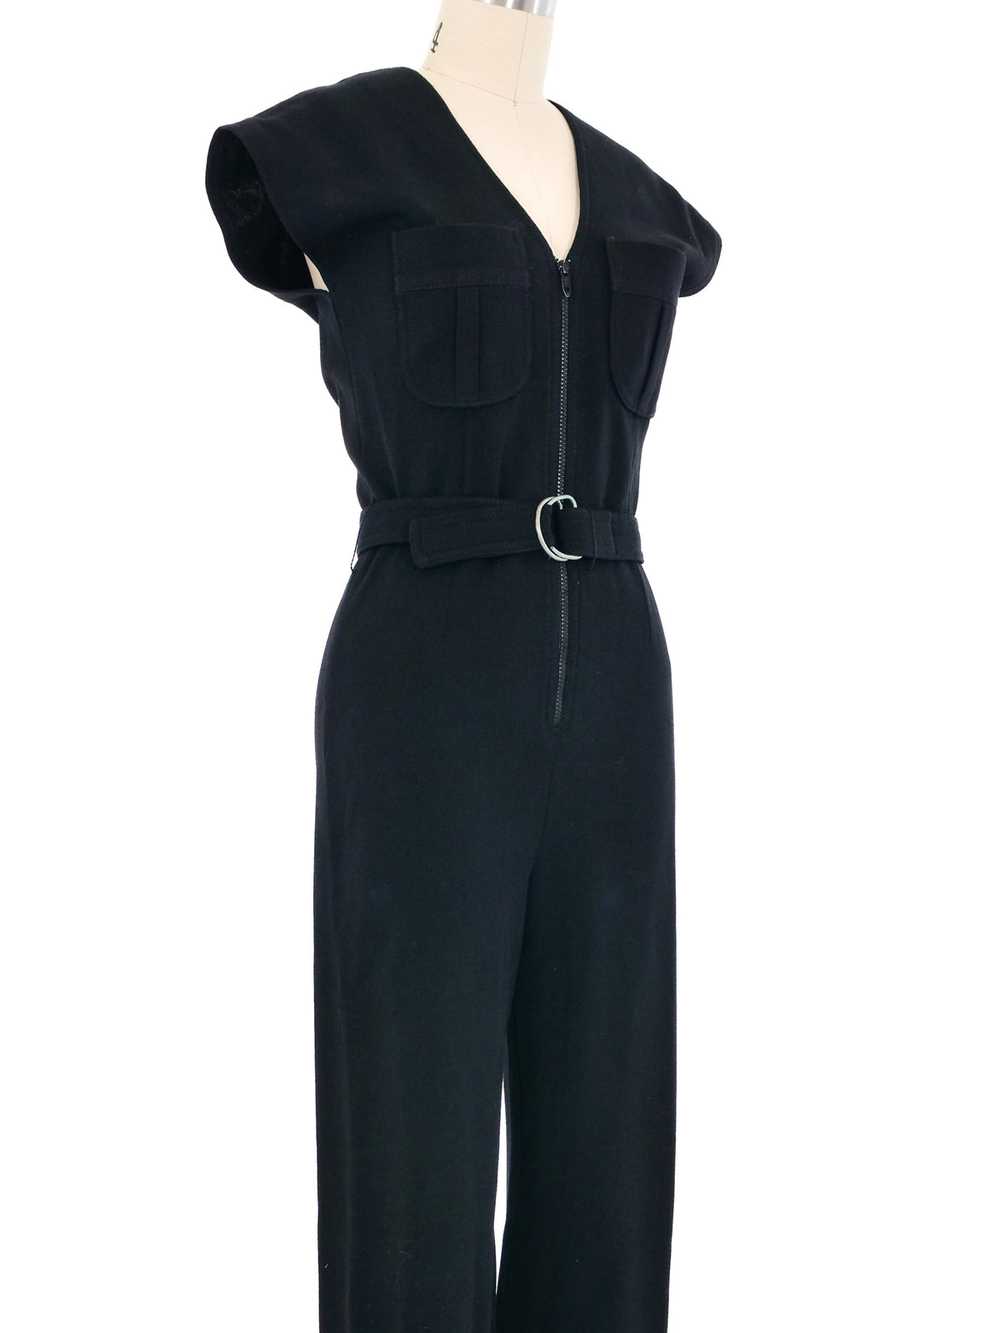 1970s Black Knit Belted Jumpsuit - image 2